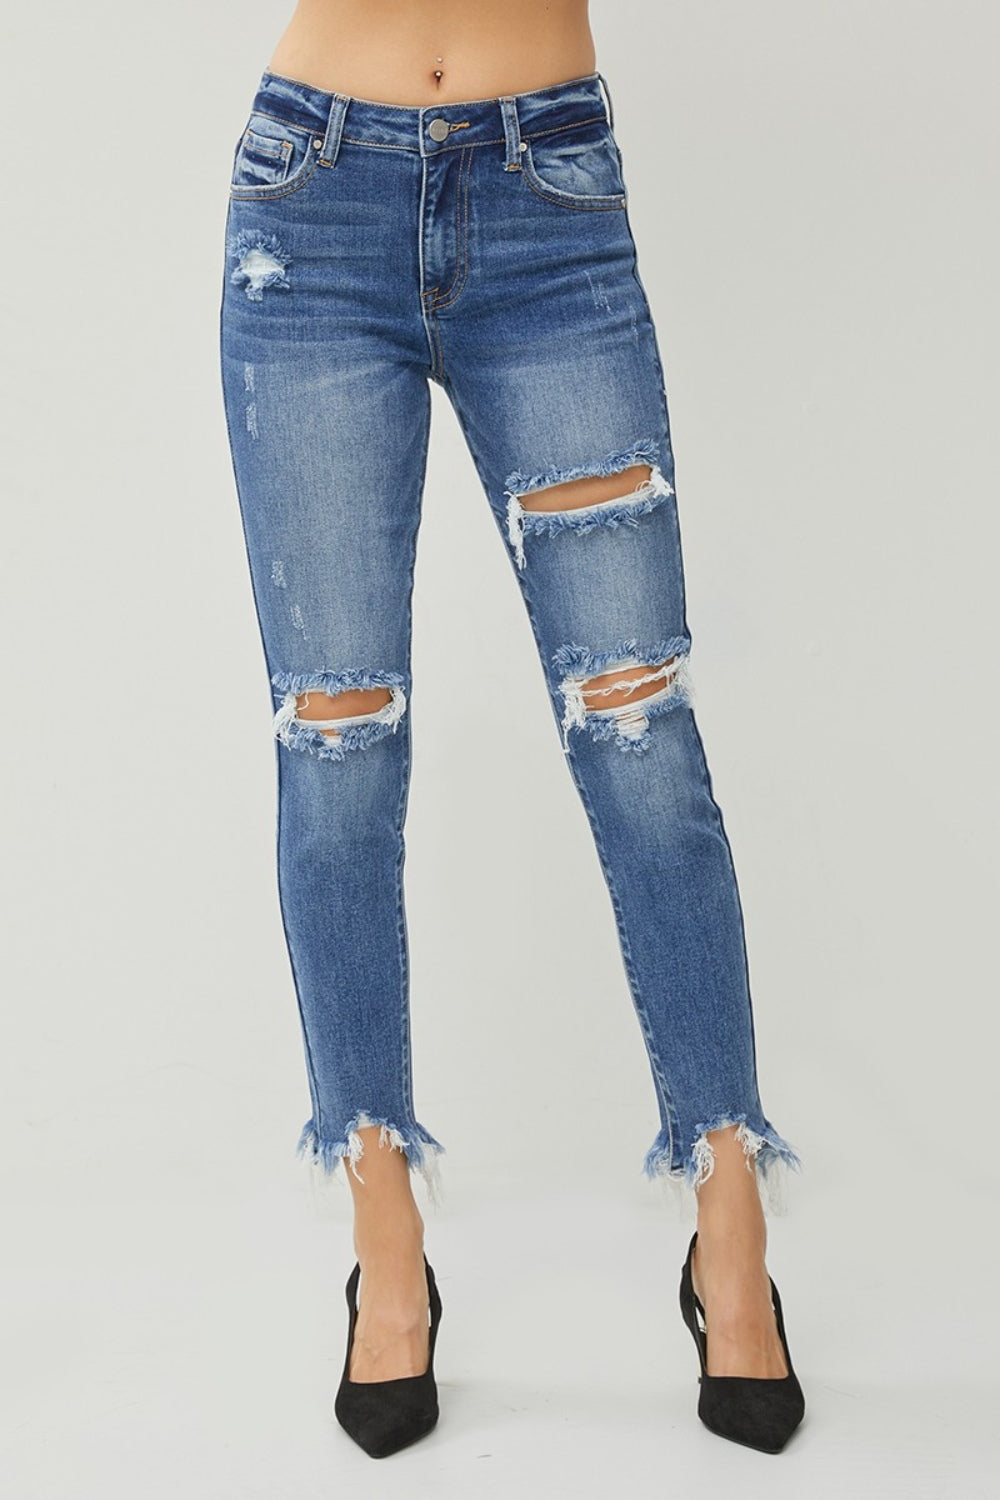 JB Non Distressed Capri Jeans, LONG – Jaxe + Grace Boutique